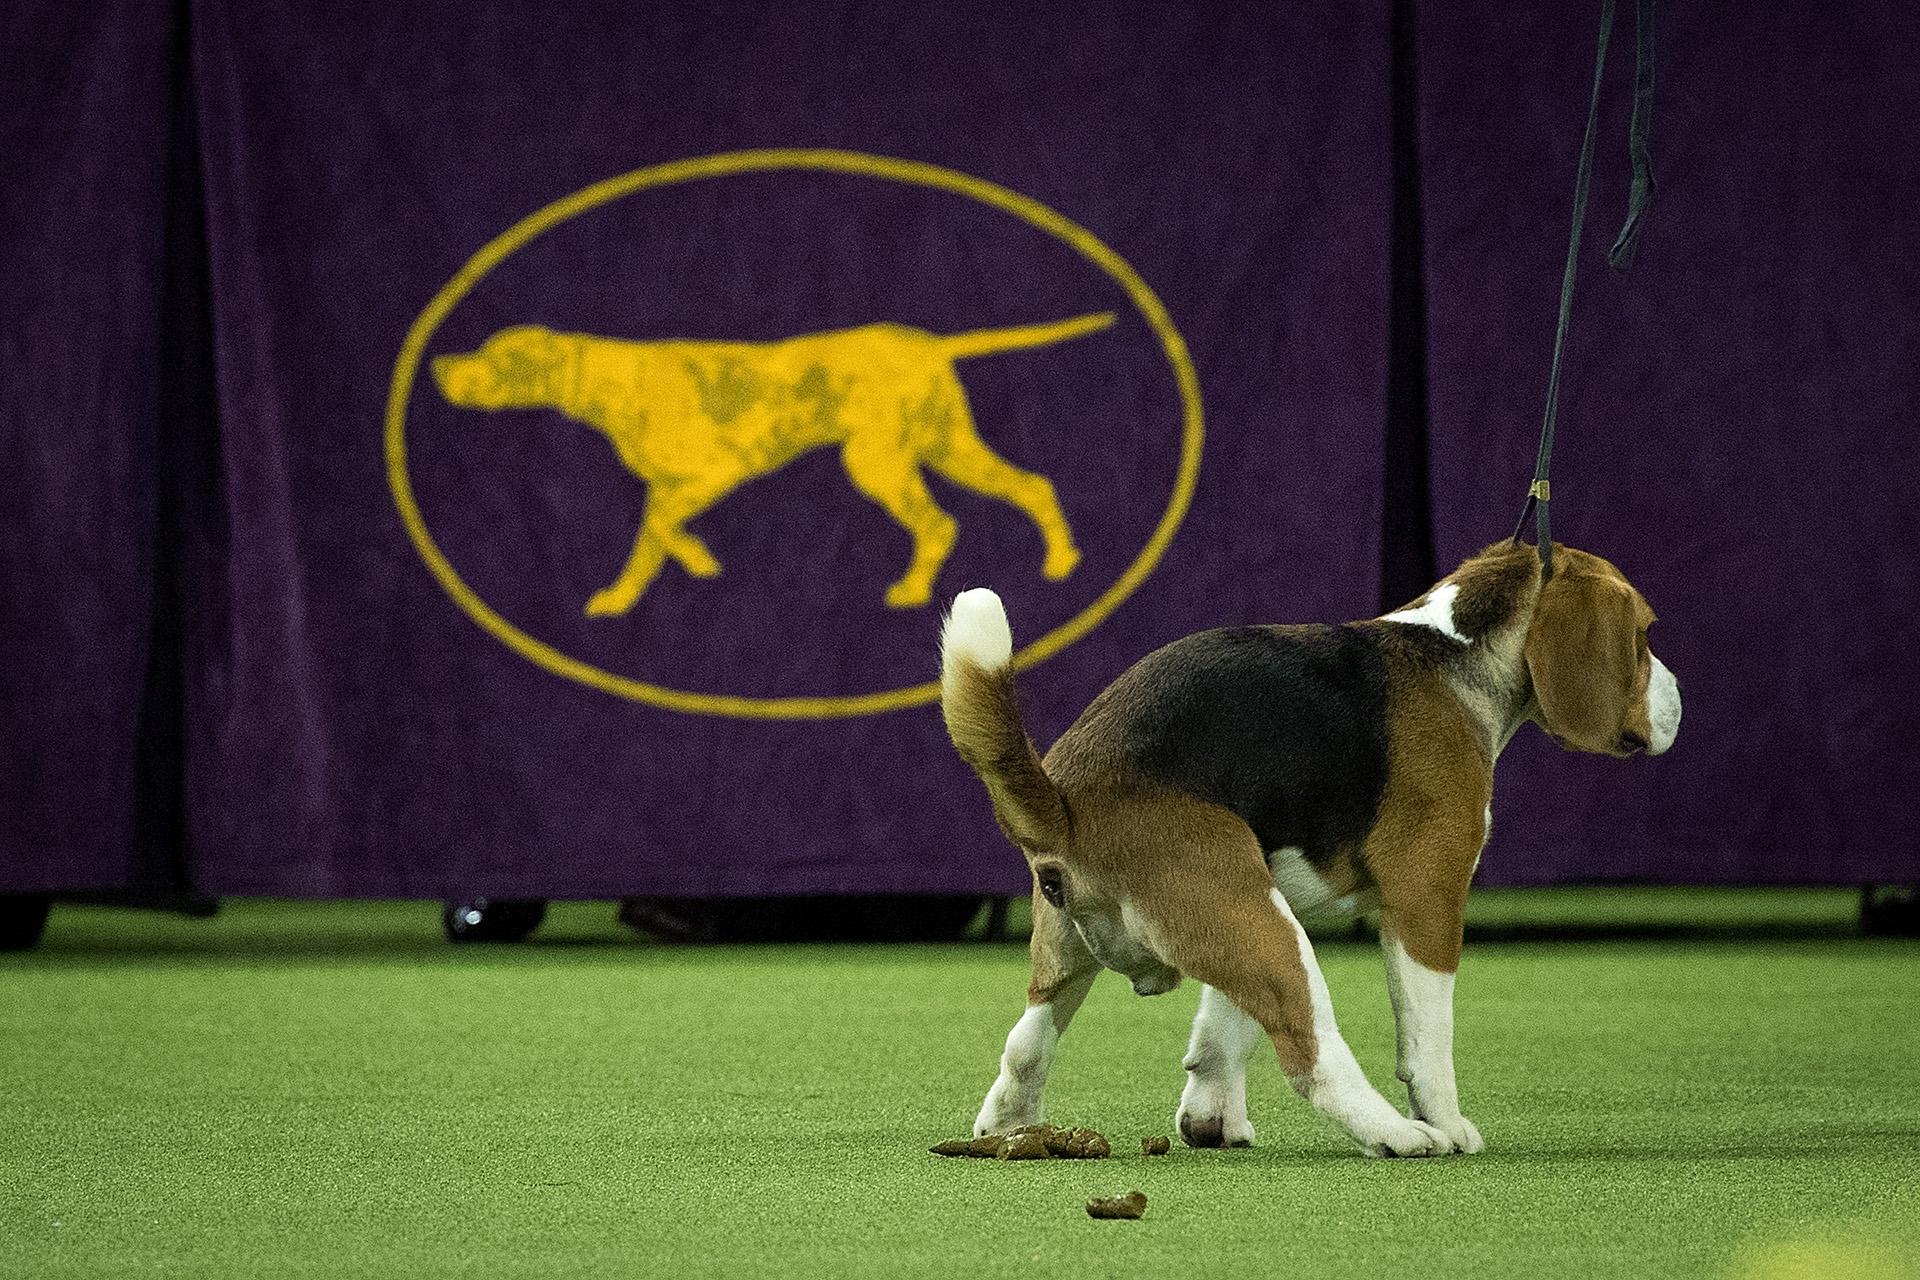 Después de ganar el primer lugar en la categoría de jinete junior, este Beagle hizo sus necesidades en medio del campo de juego